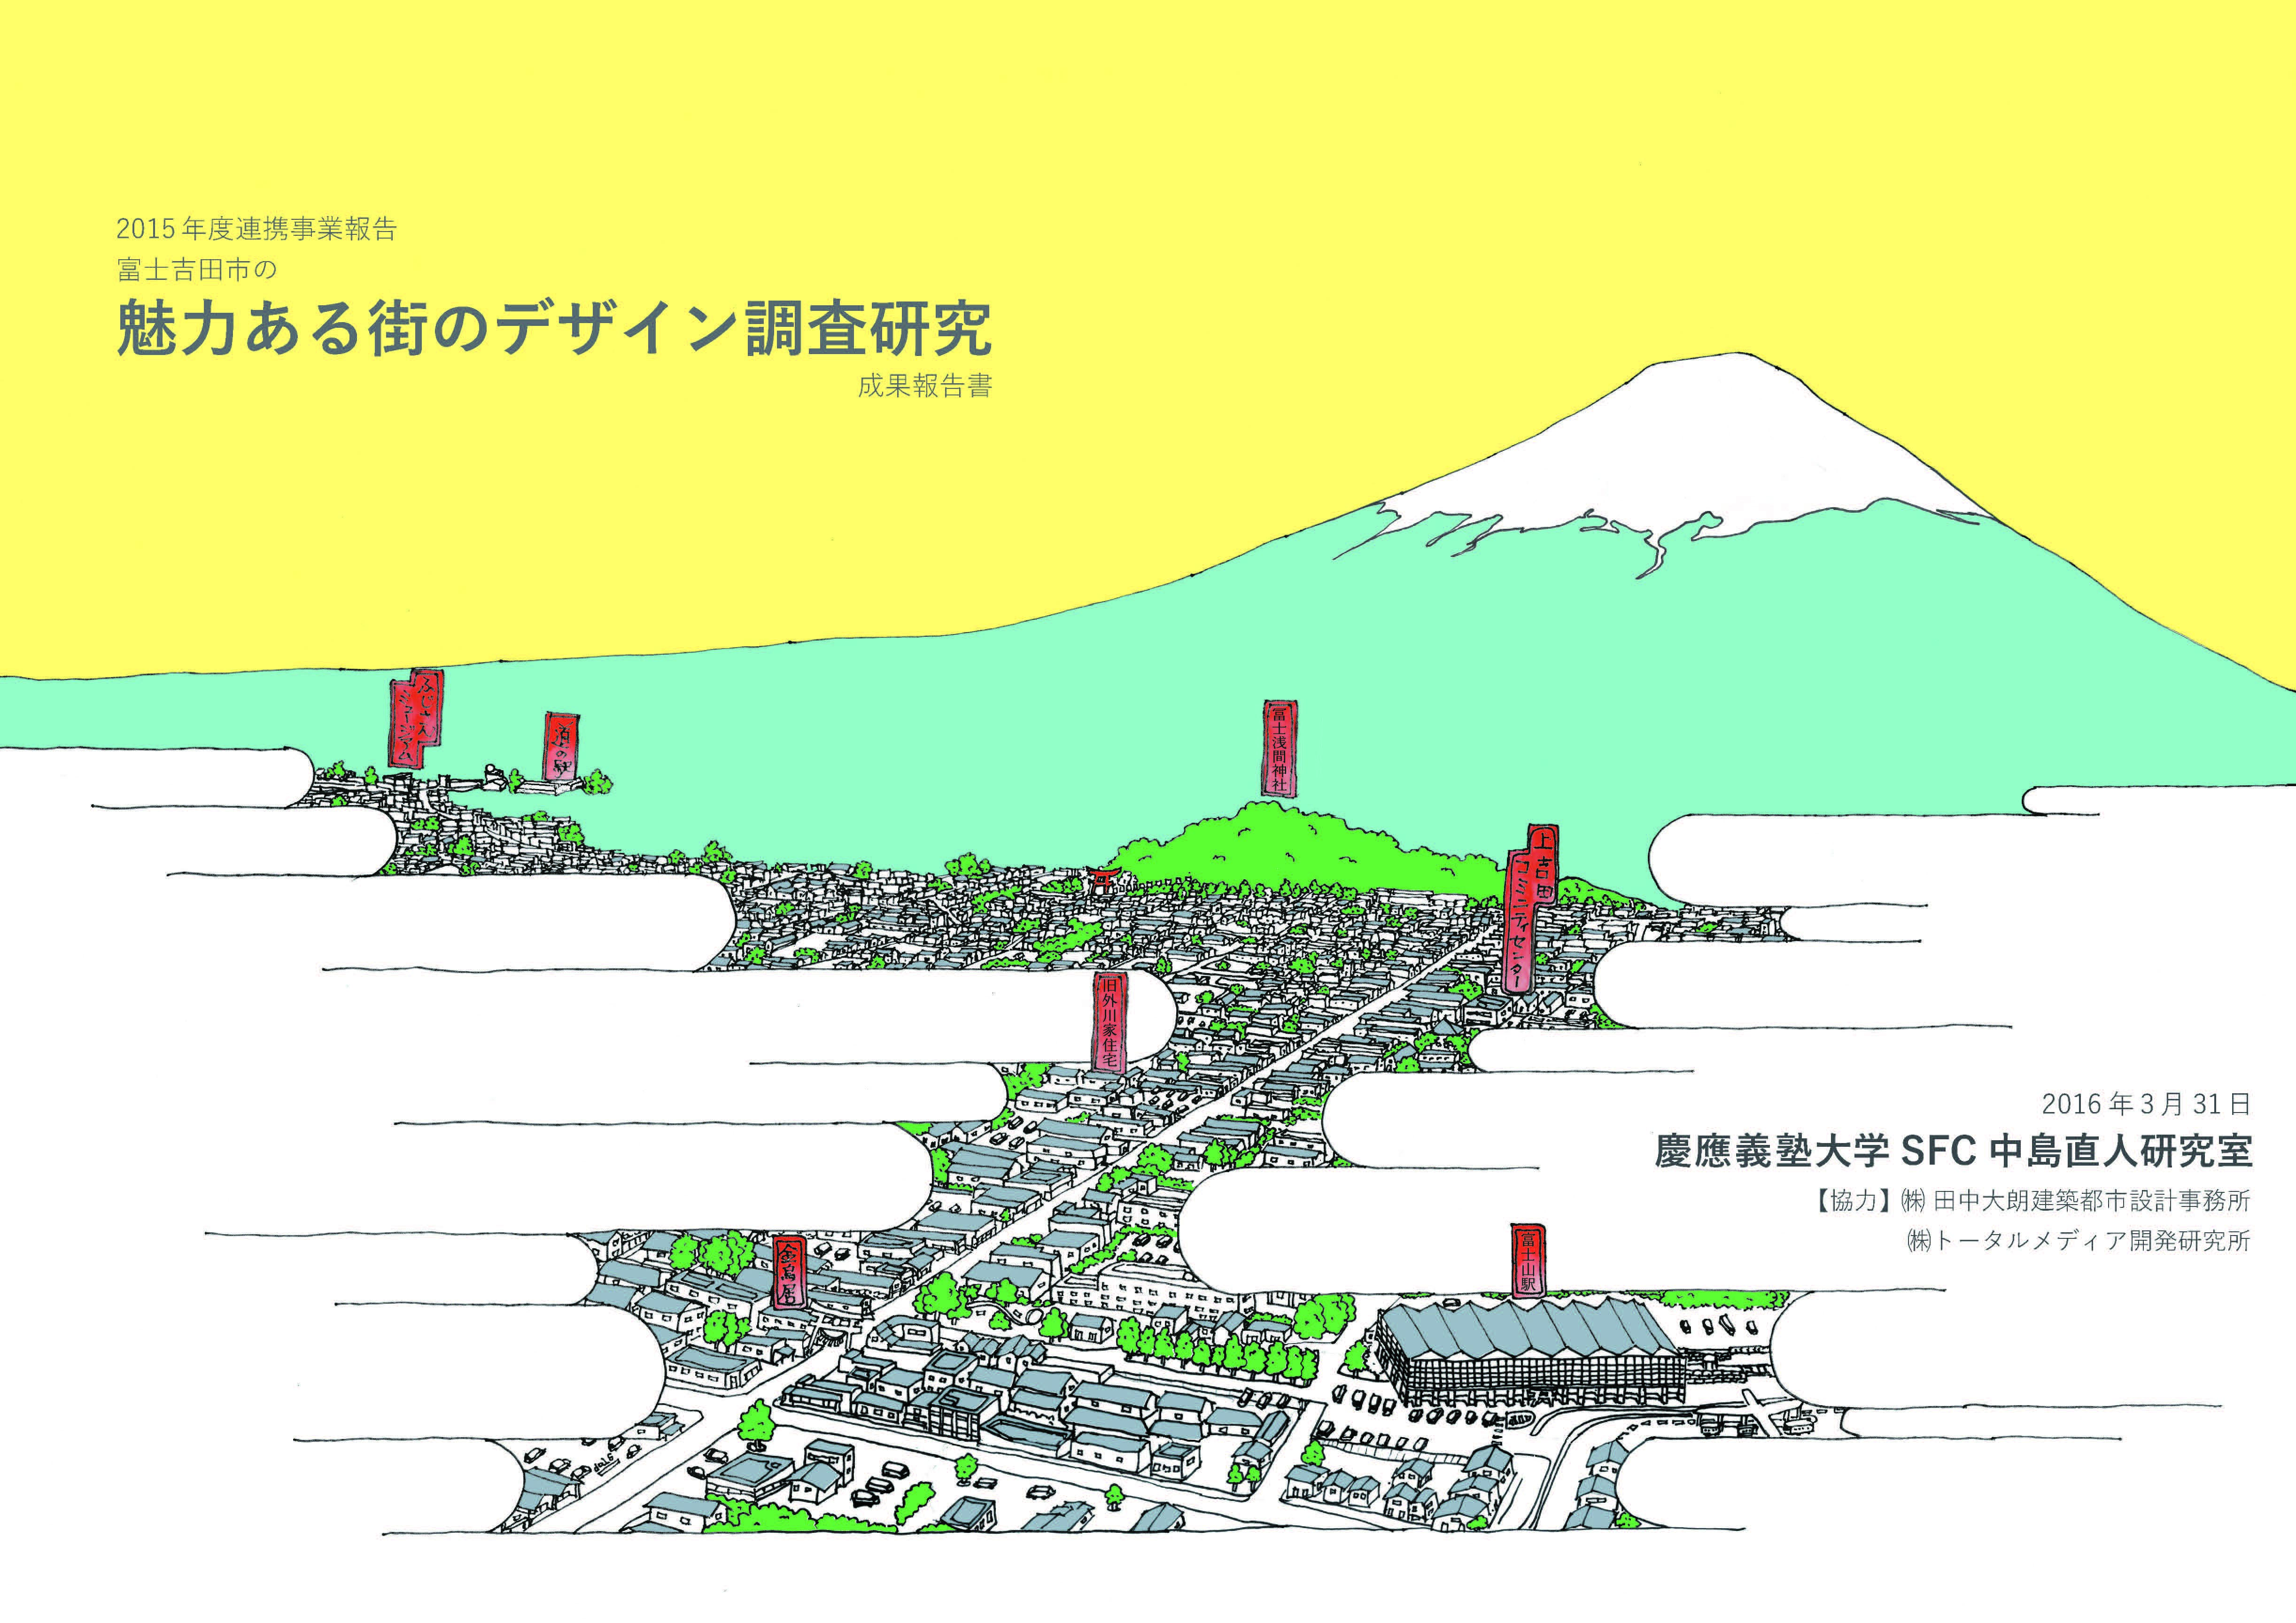 富士吉田市魅力ある街のデザイン(2014-)